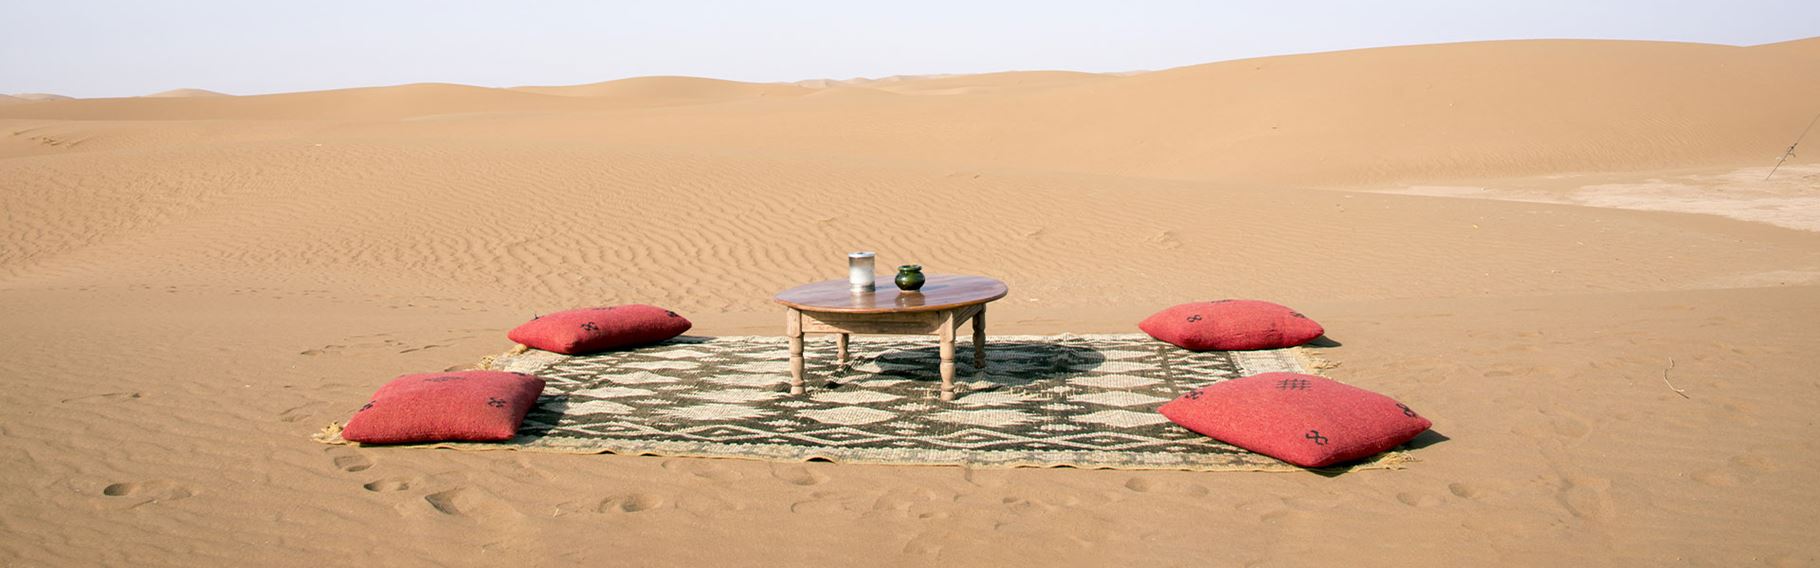 Marokko Vejr Billede, opstilling med tæppe, puder og bord i ørkenlandskab